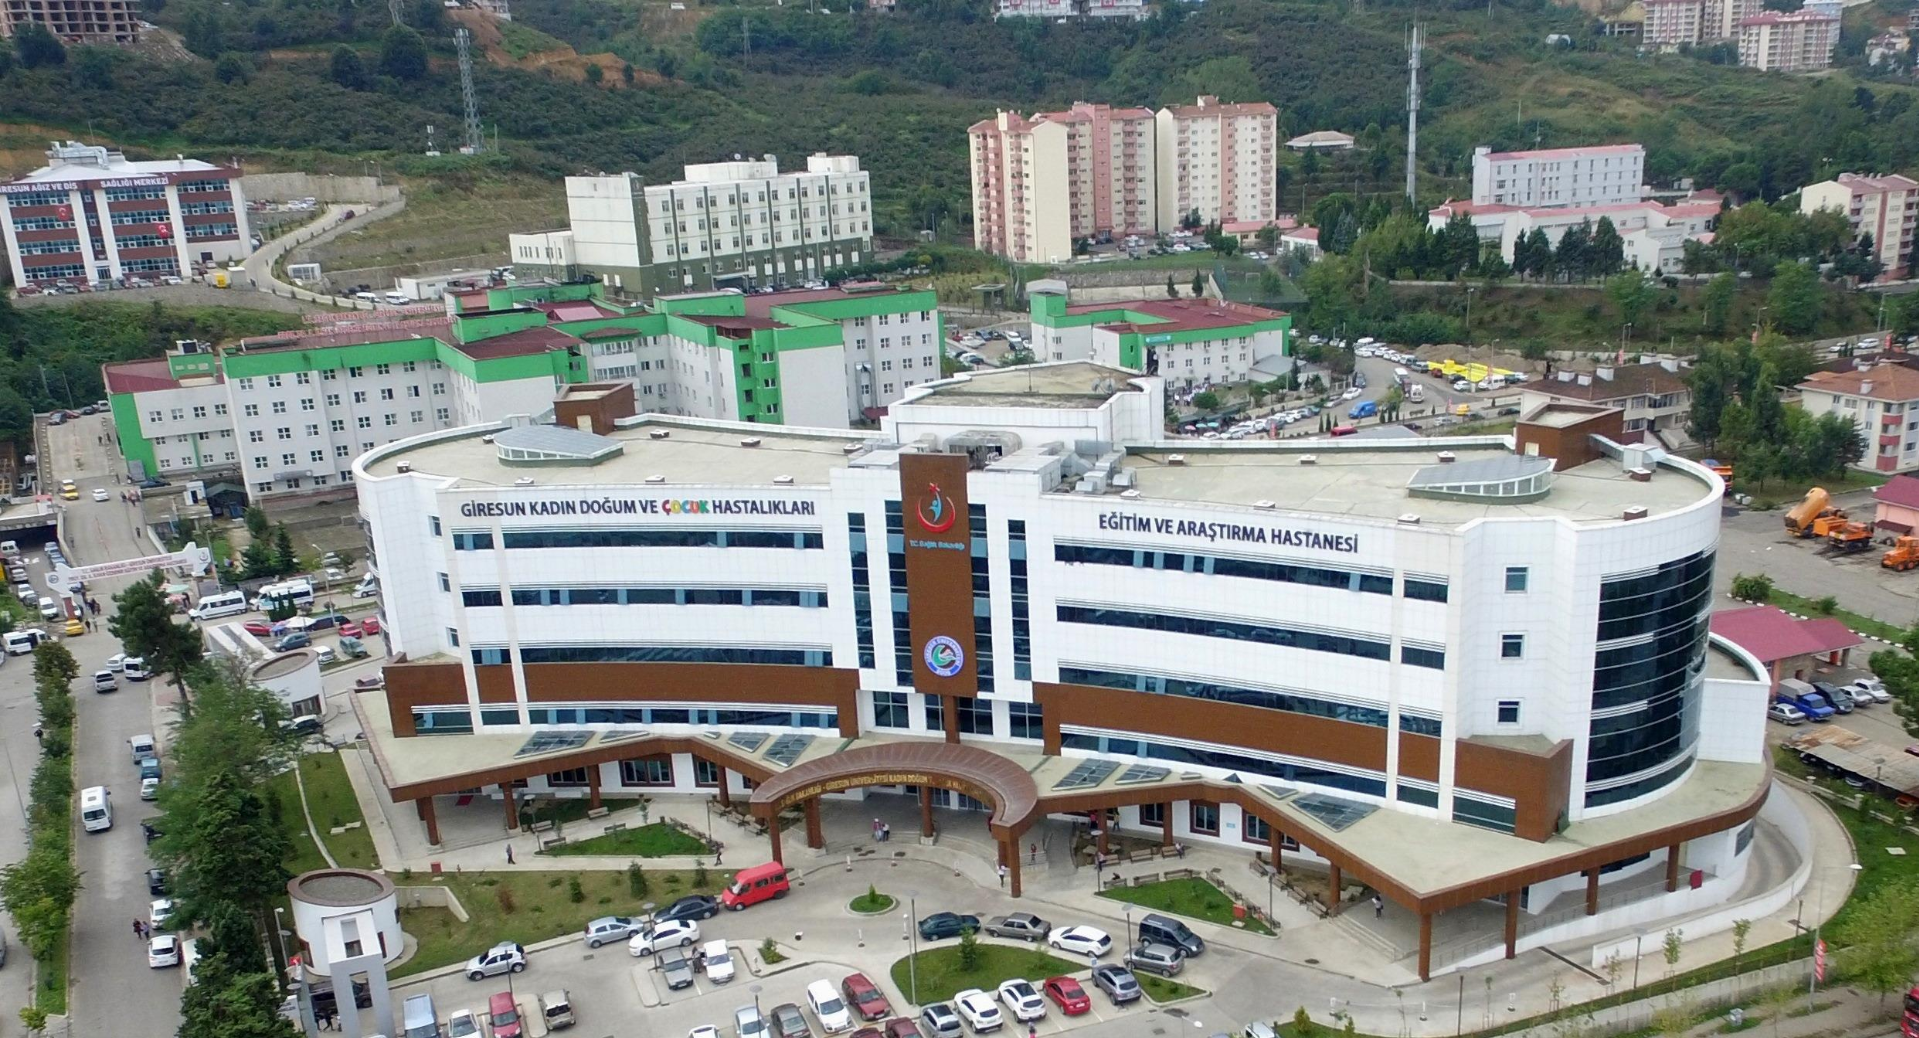 إيجابيات وسلبيات الولادة بالمستشفيات الحكومية والخاصة التركية تختلف من مستشفى لآخر